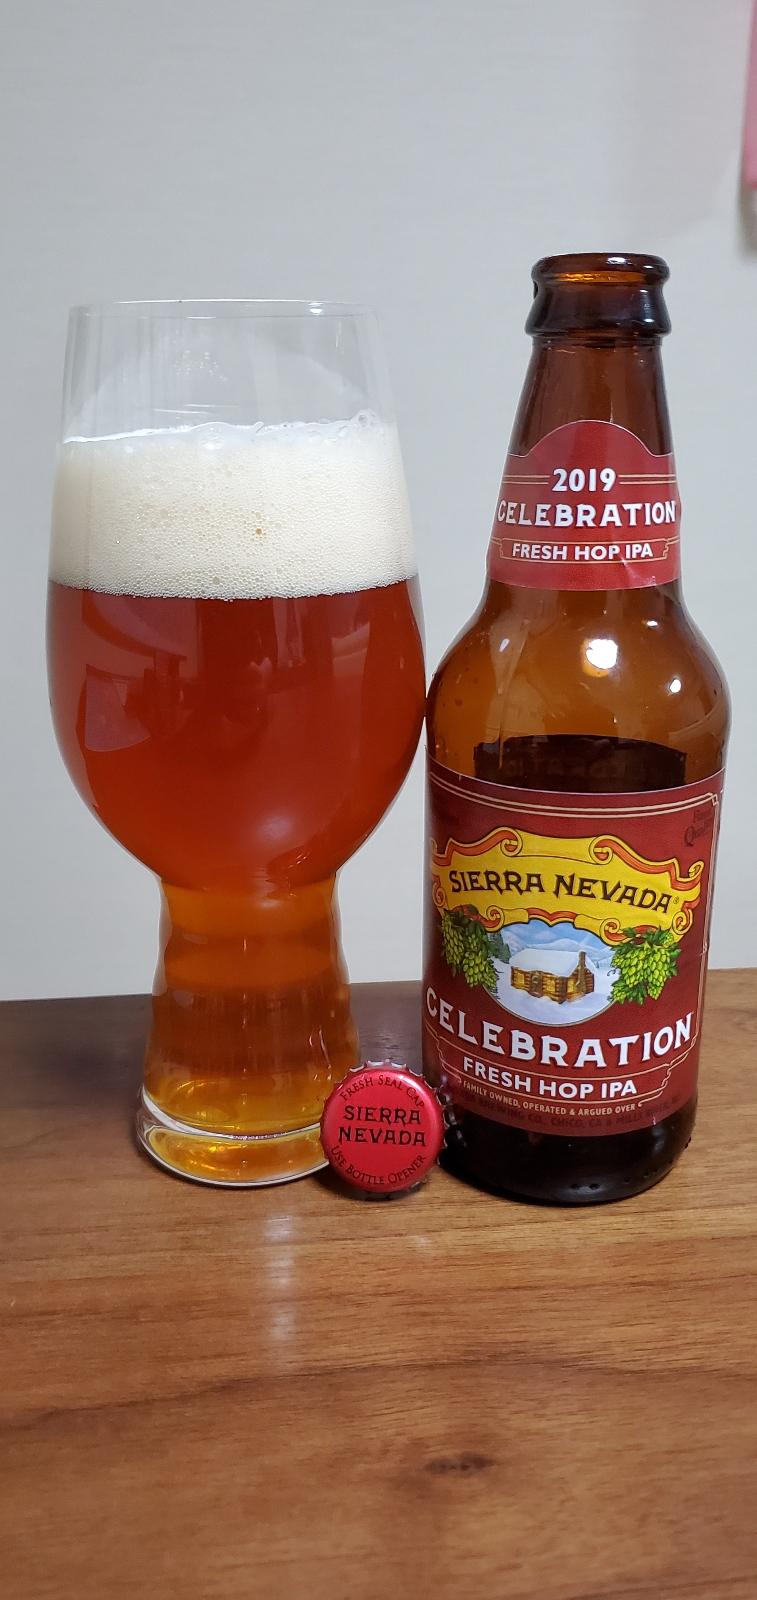 Celebration Fresh Hop IPA (2019)